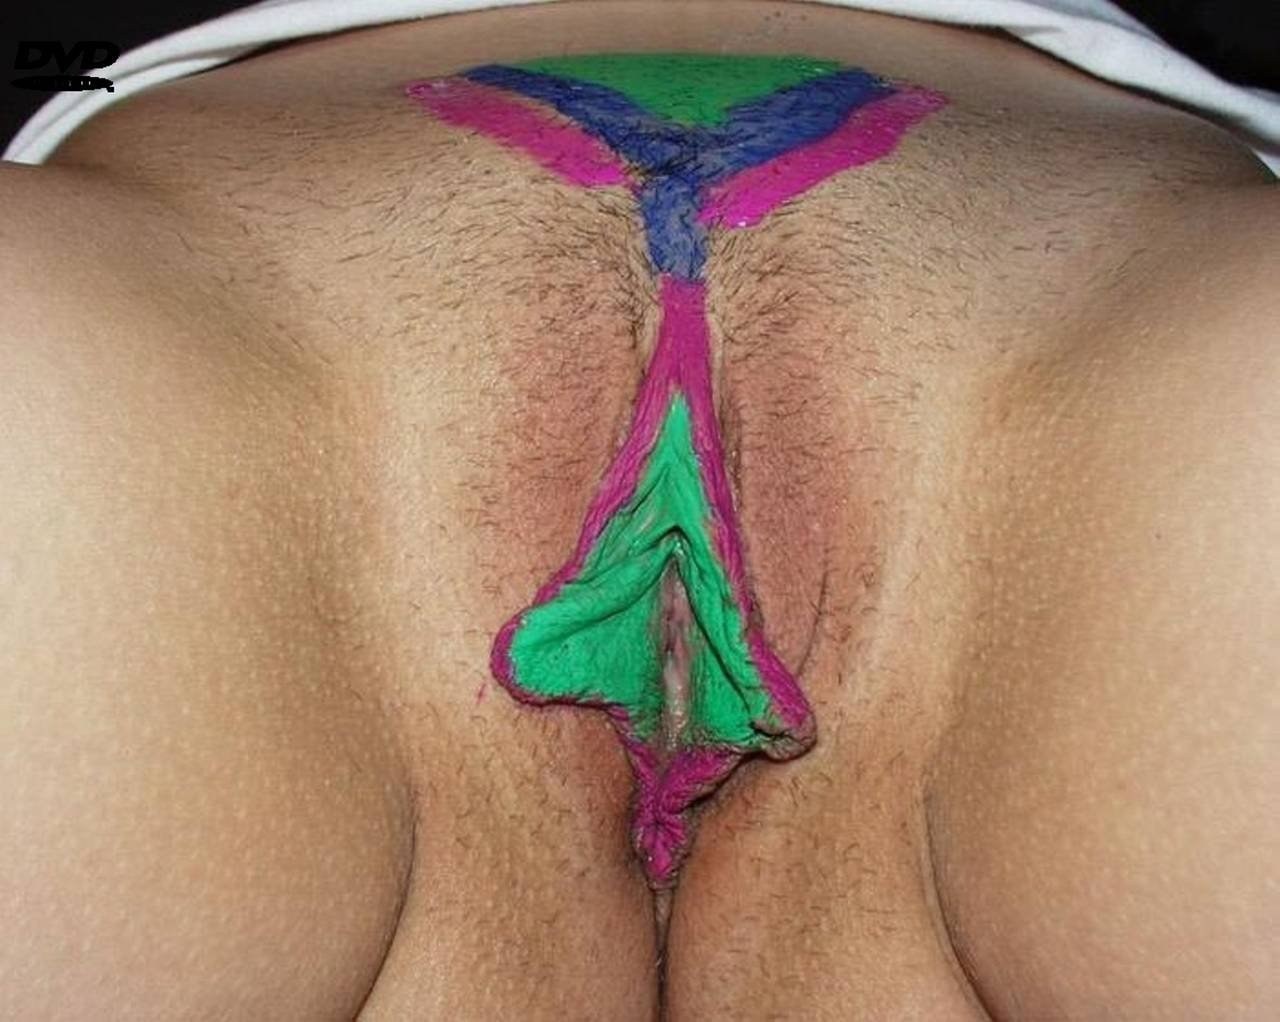 Vulva body painting